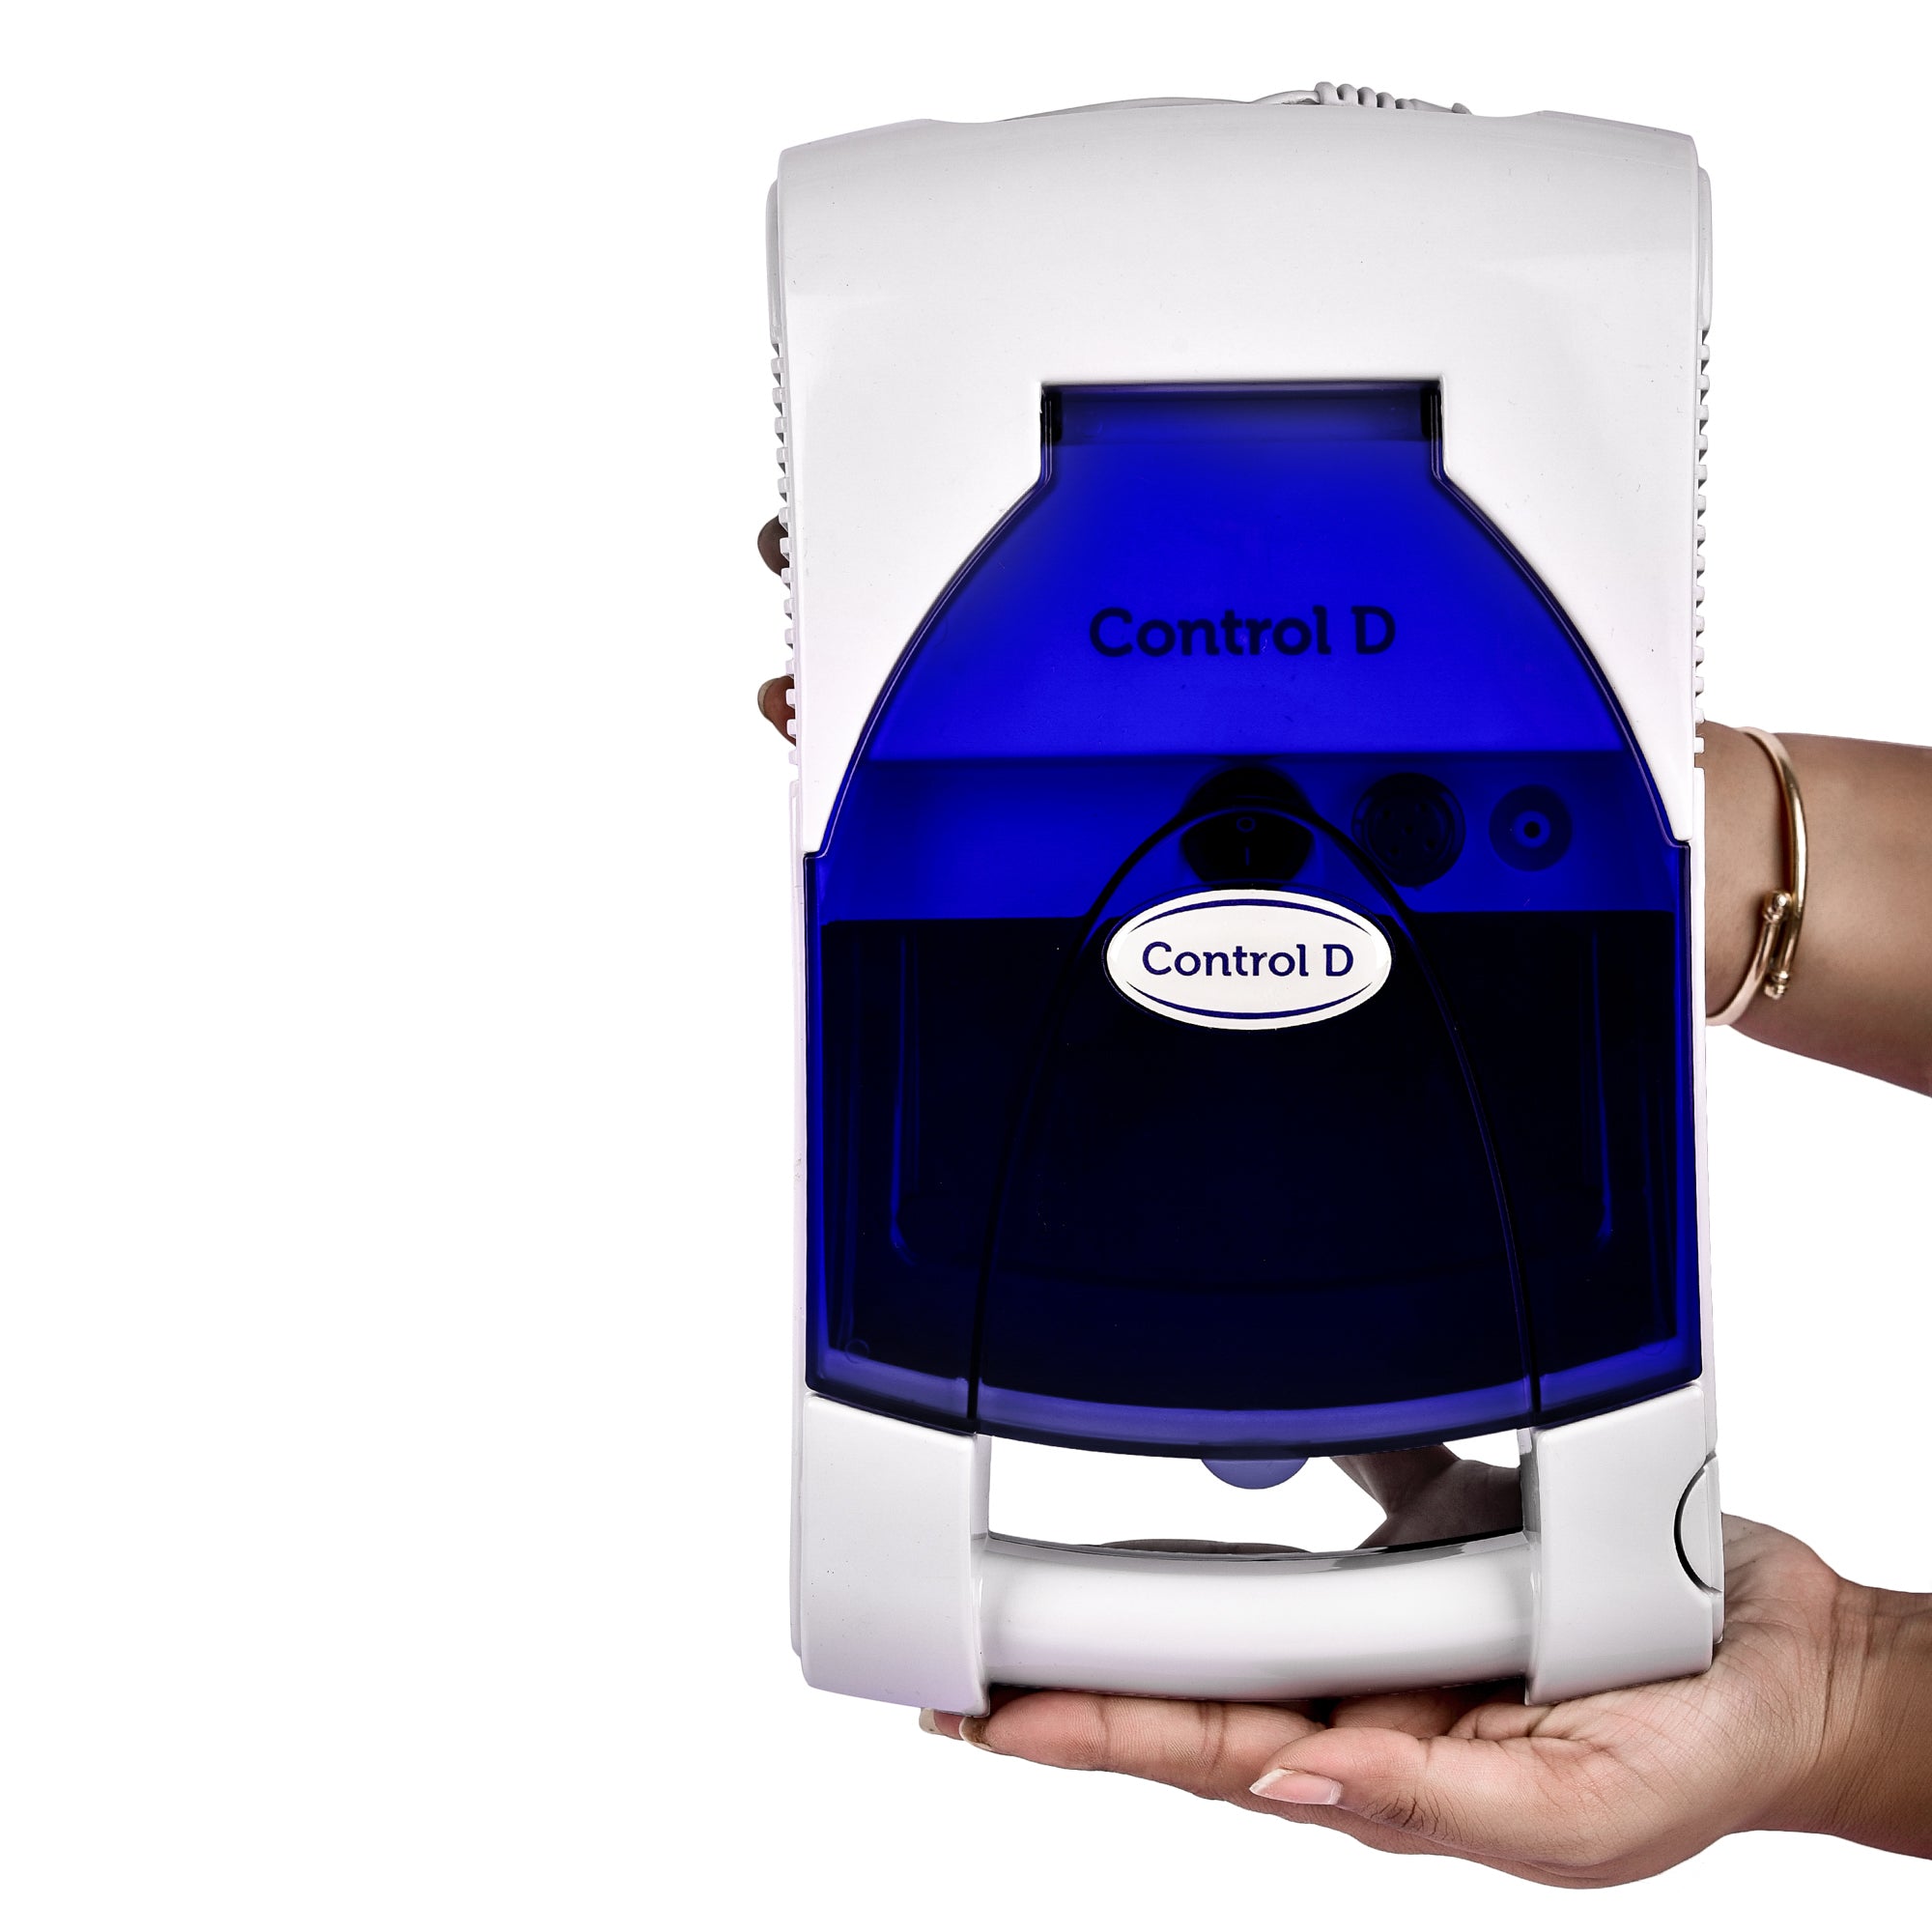 Control D Premium Nebulizer